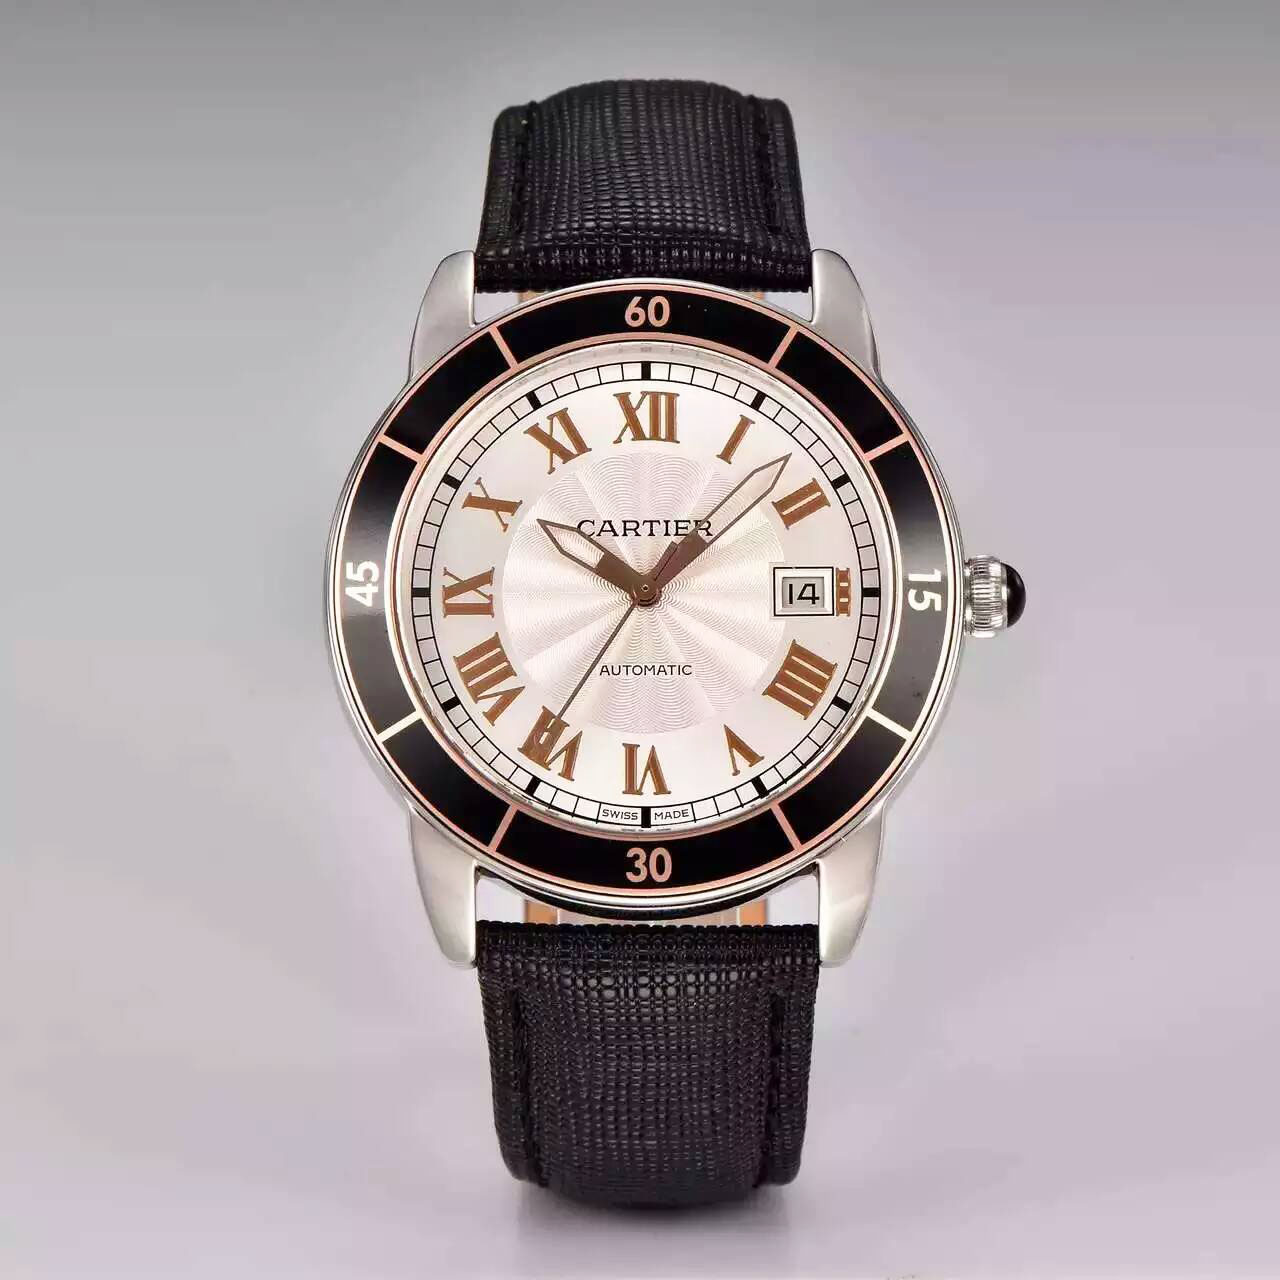 卡地亞 Cartier 入門級大三針腕錶 「Ronde Croisiere」 搭載9015機芯